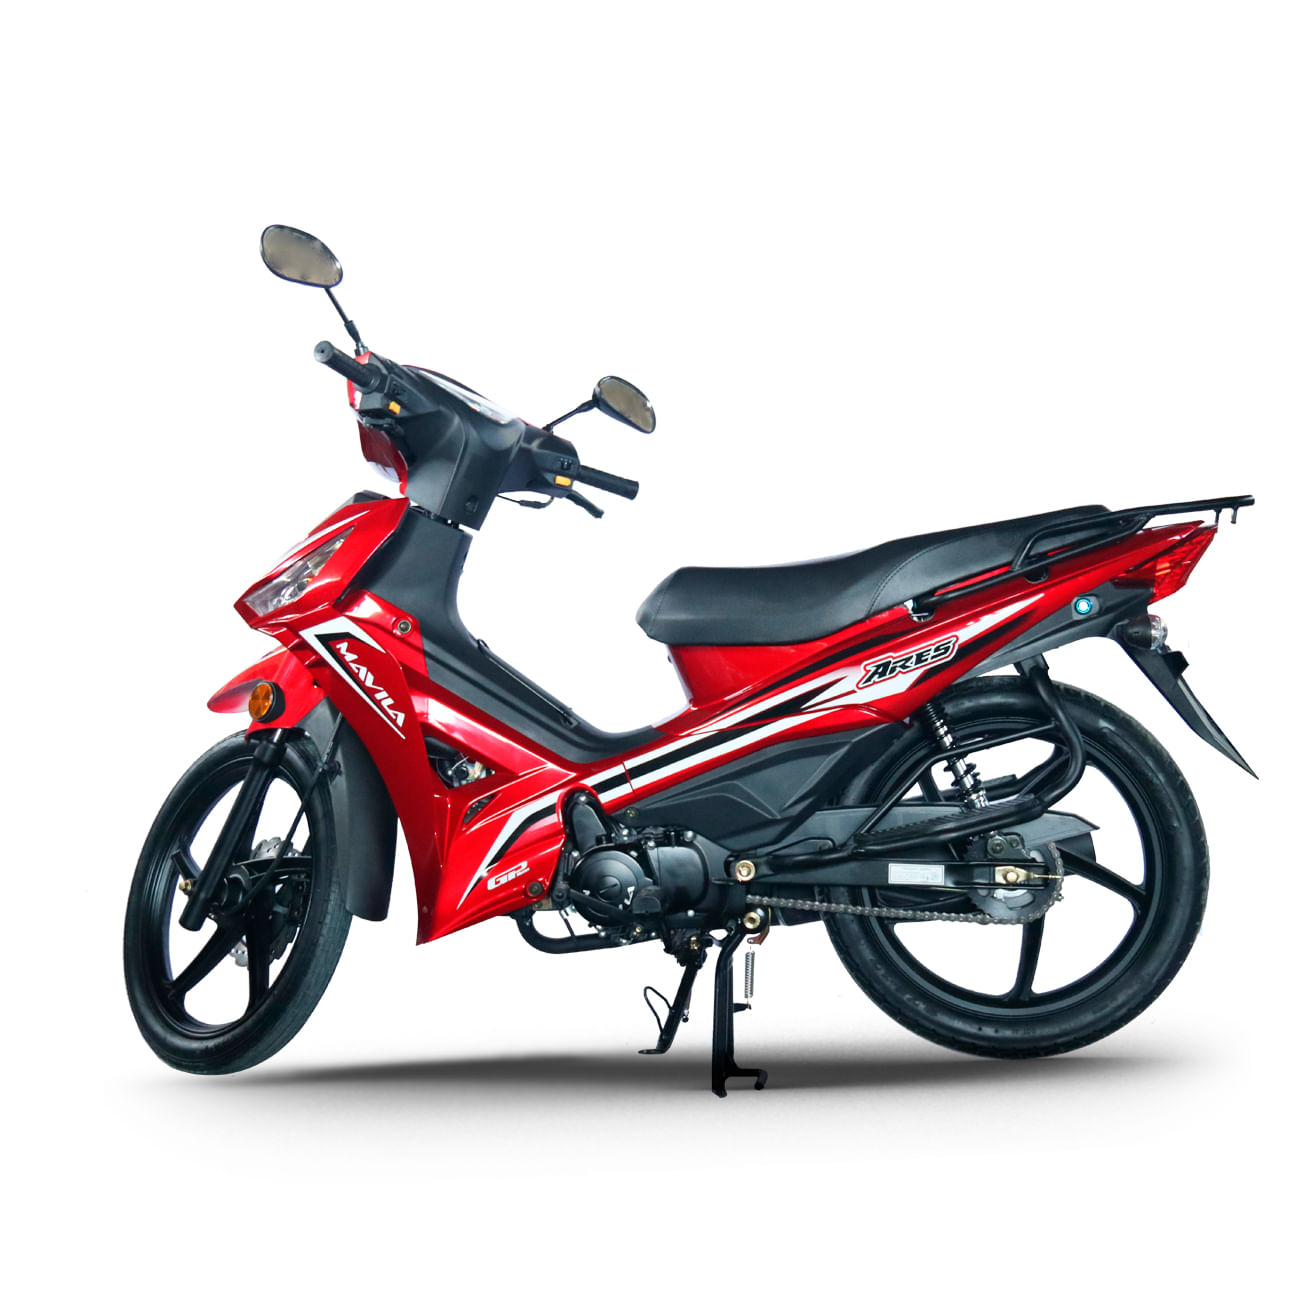 Motocicleta Mavila New Ares Roja 110 cc